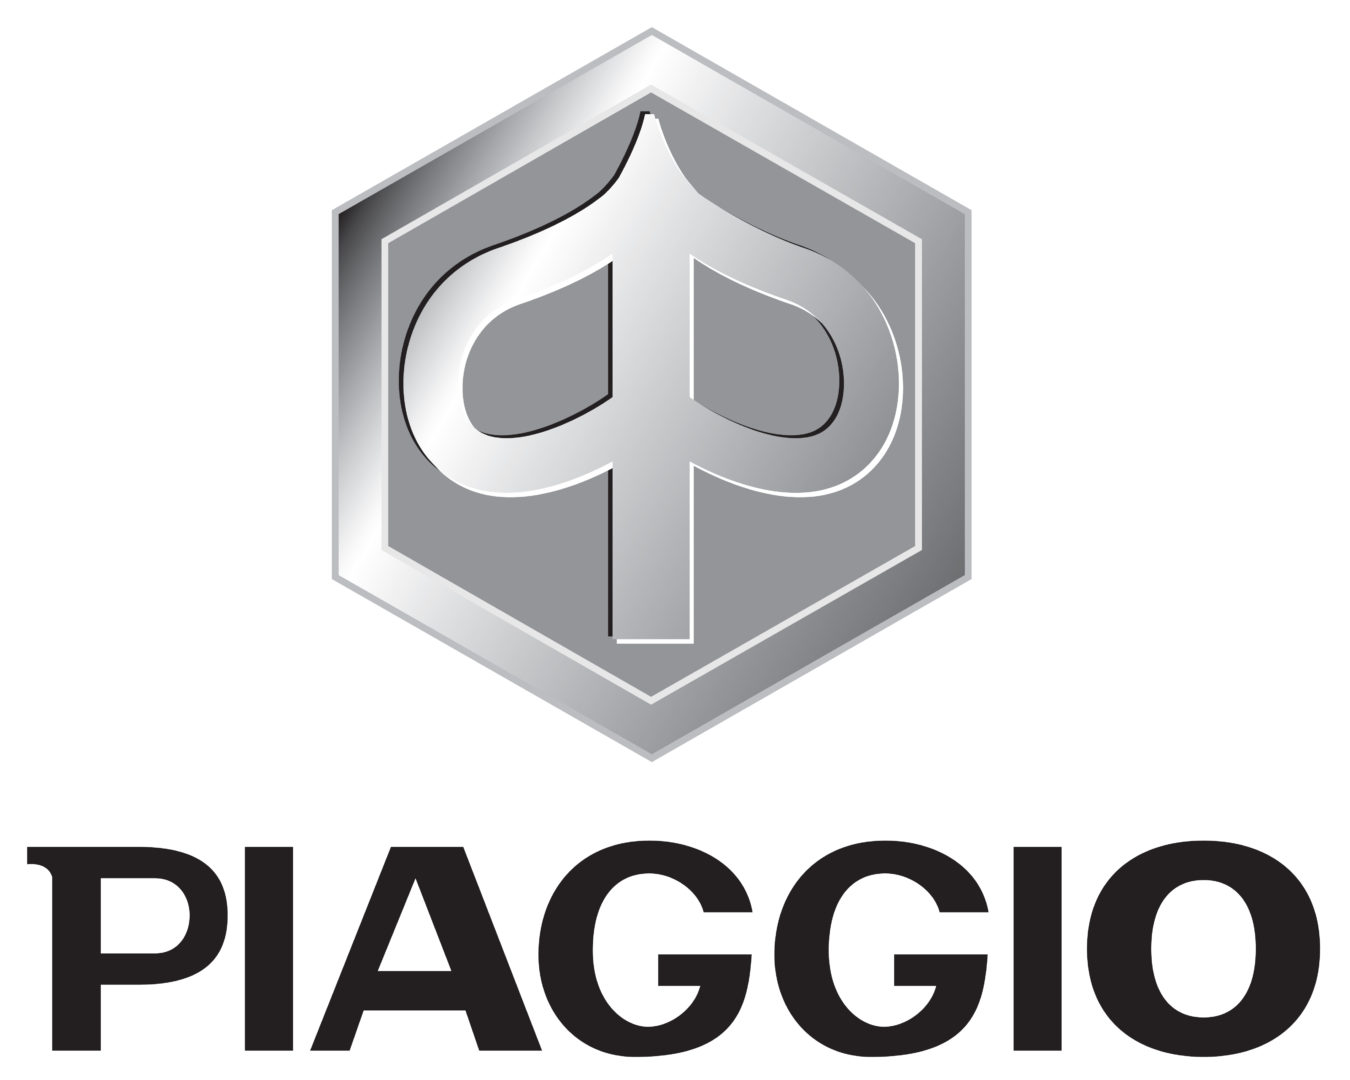 Piaggio motorcycle logo